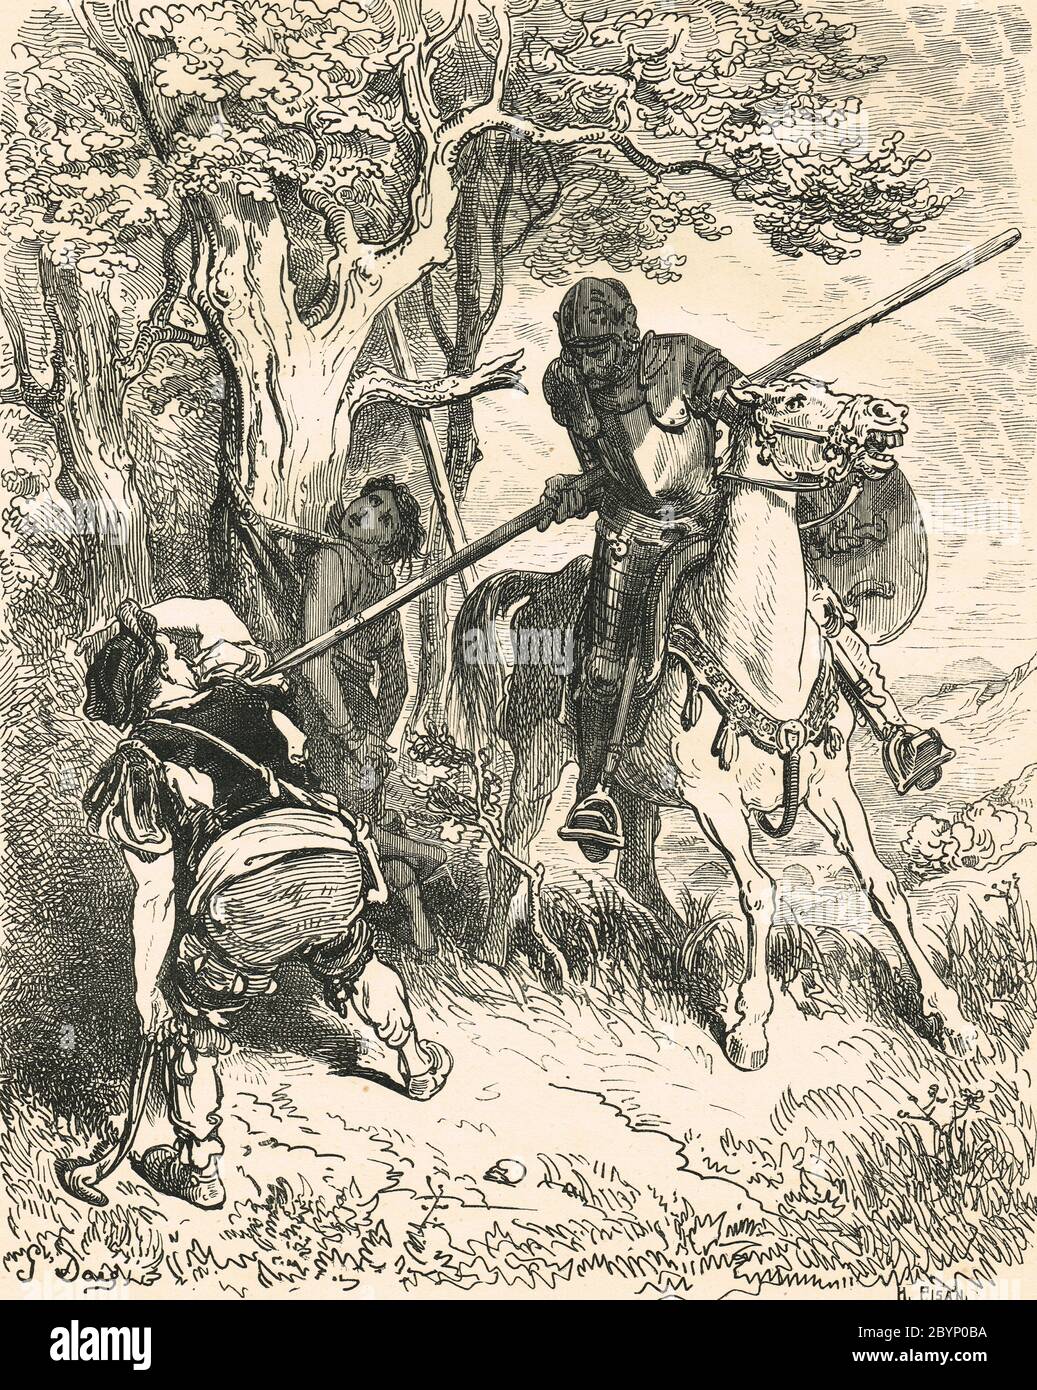 Don Quixote befreiender Junge namens Andres, an einen Baum gebunden, von seinem Meister geschlagen. Illustration von Gustave Dore Stockfoto